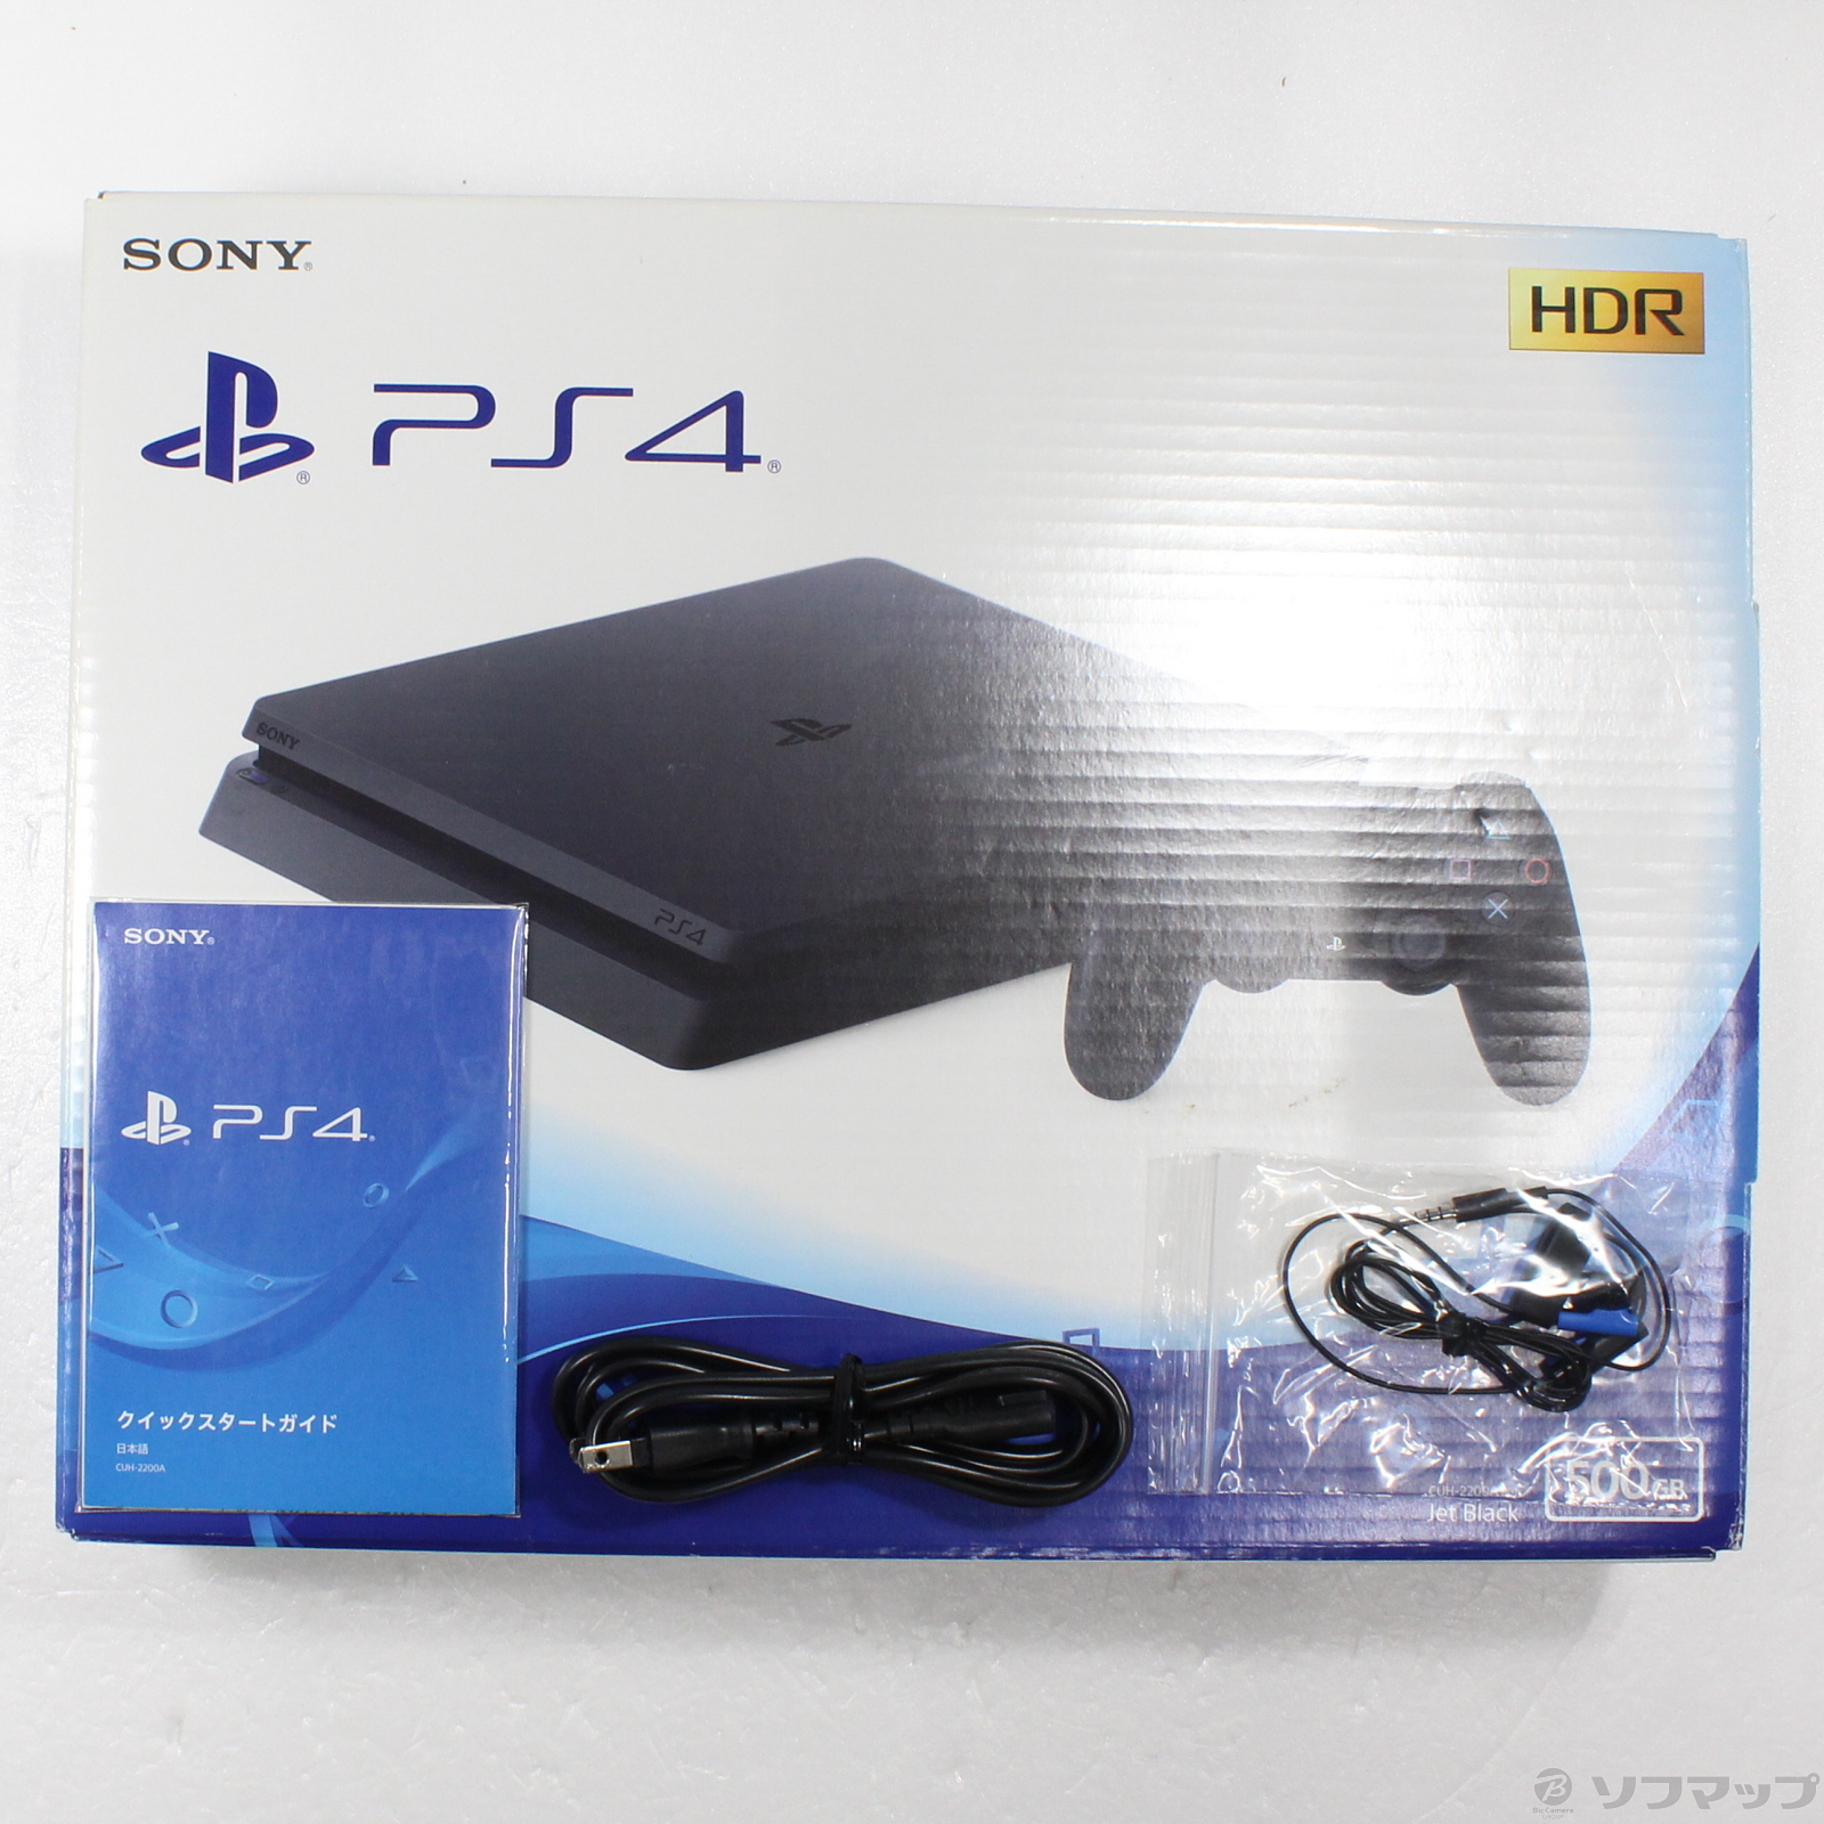 中古品PlayStation 4喷气·黑色500GB CUH-2200AB01|no邮购是秋叶原 